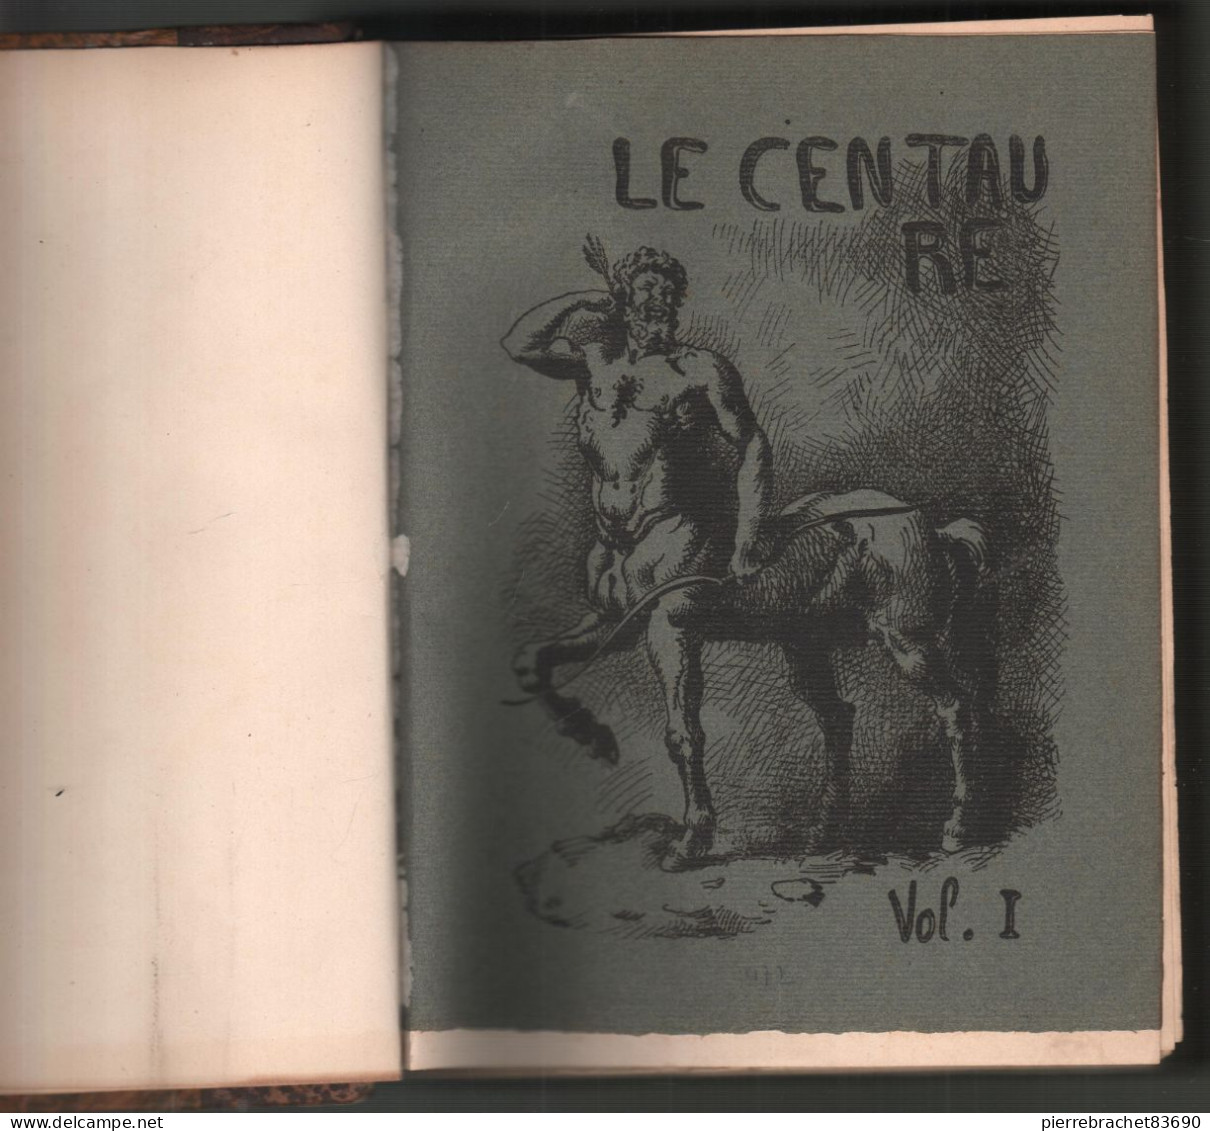 Collectif. Revue Le Centaure. 2 Volumes Reliés En Un Seul. - Unclassified